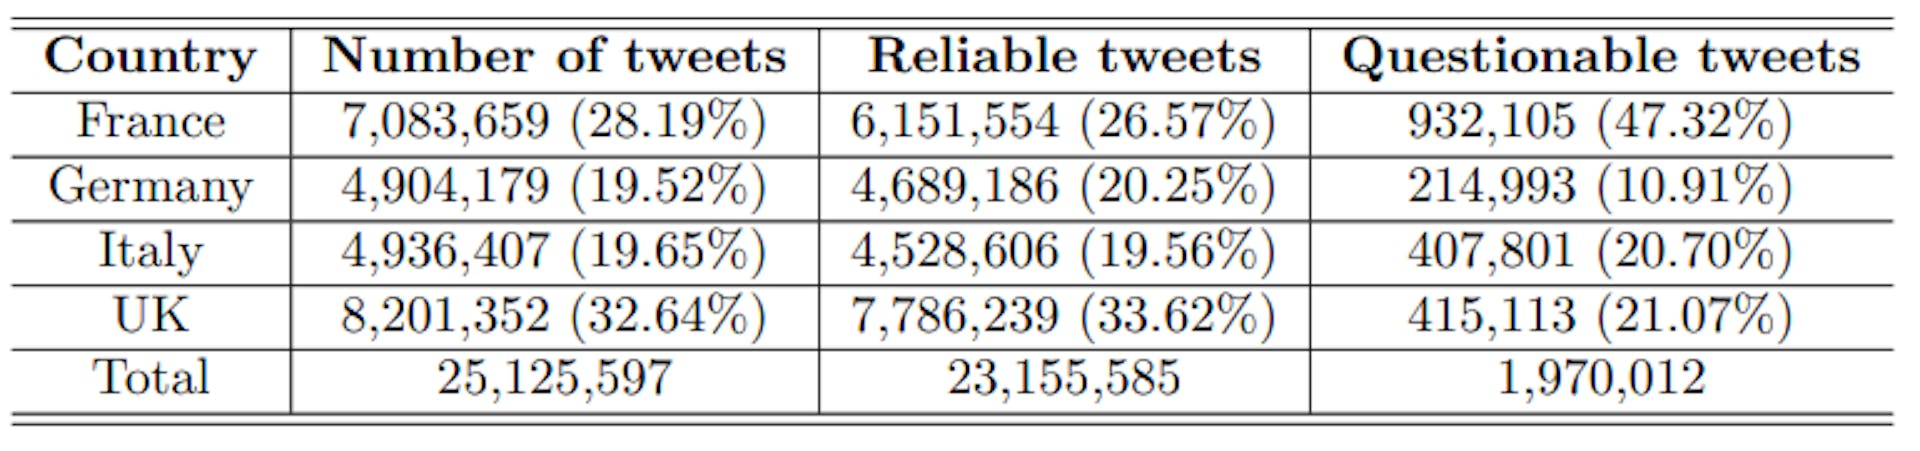 표 2: 국가별 트윗량 및 신뢰성